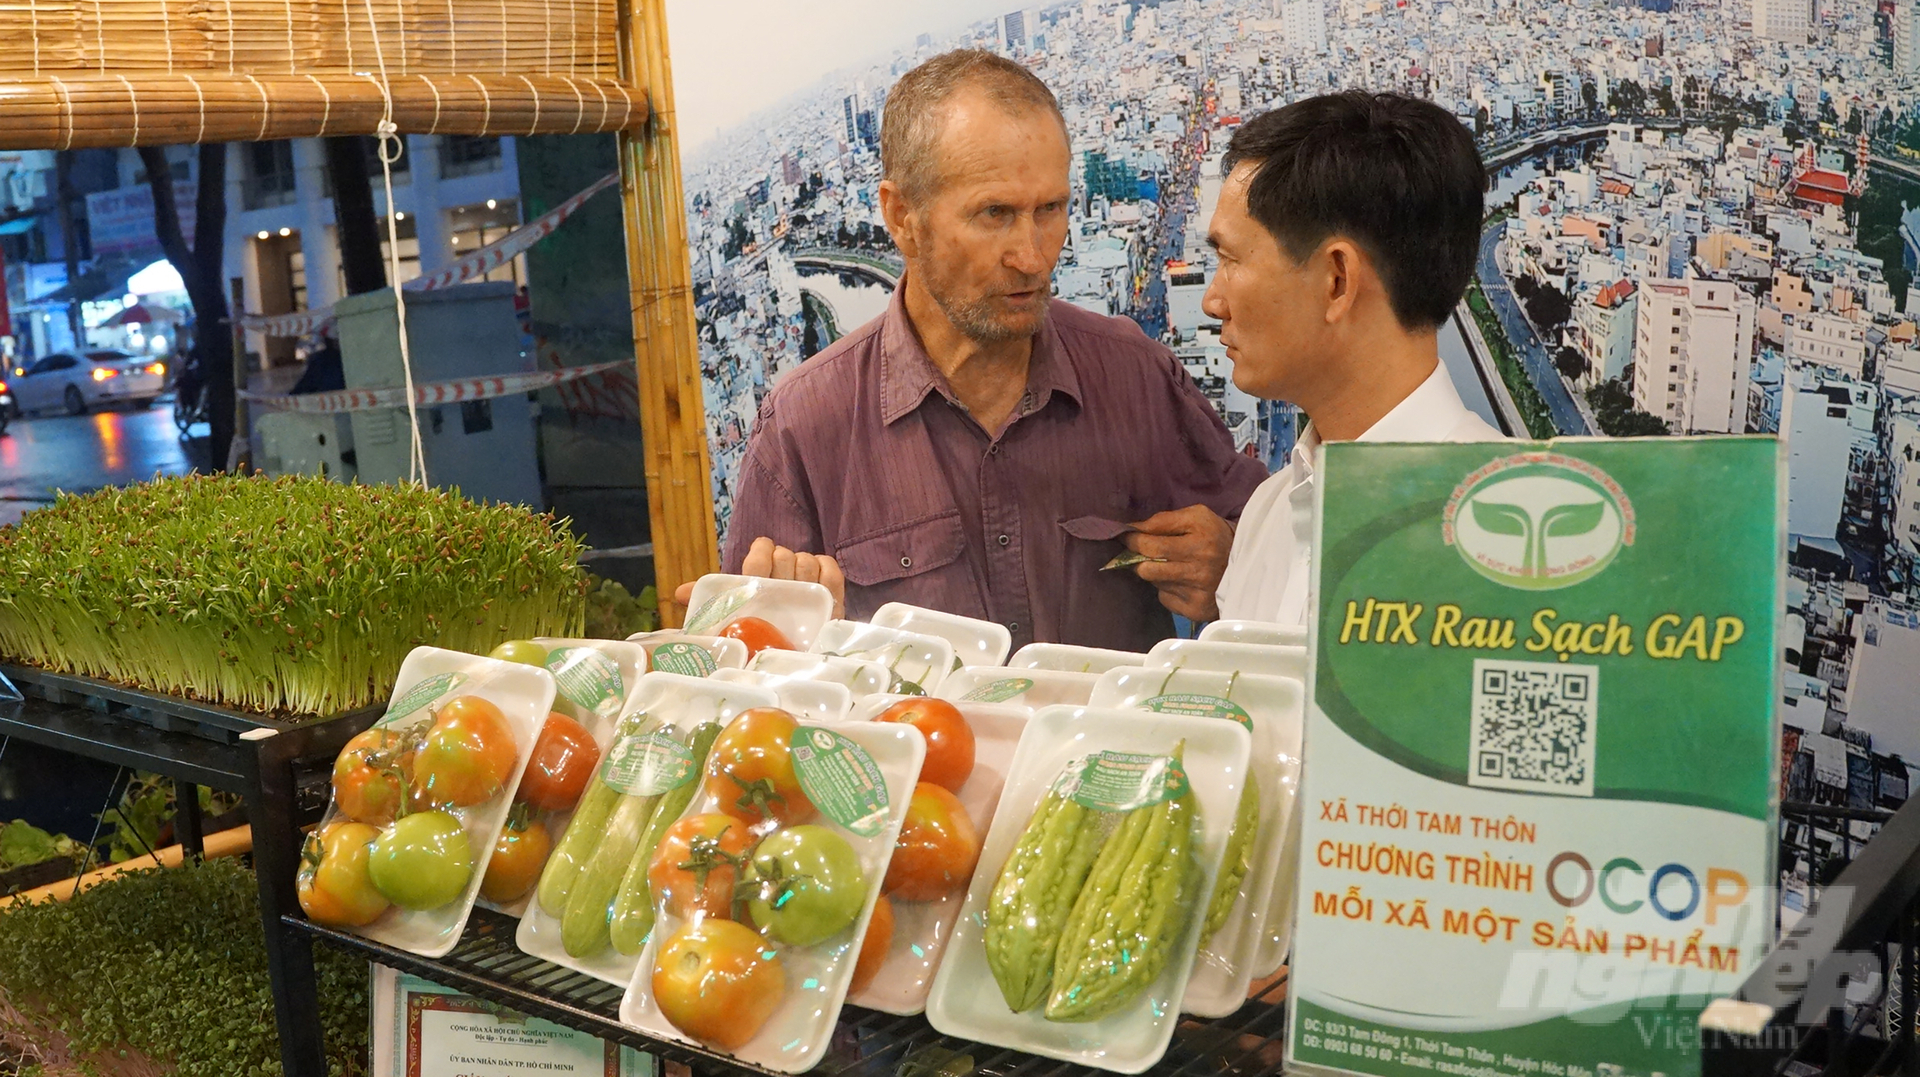 HTX thương mại dịch vụ rau sạch GAP (Hóc Môn) có 1 sản phẩm đạt OCOP 3 sao là rau cải thìa Rasafood. Ảnh: Nguyễn Thủy.